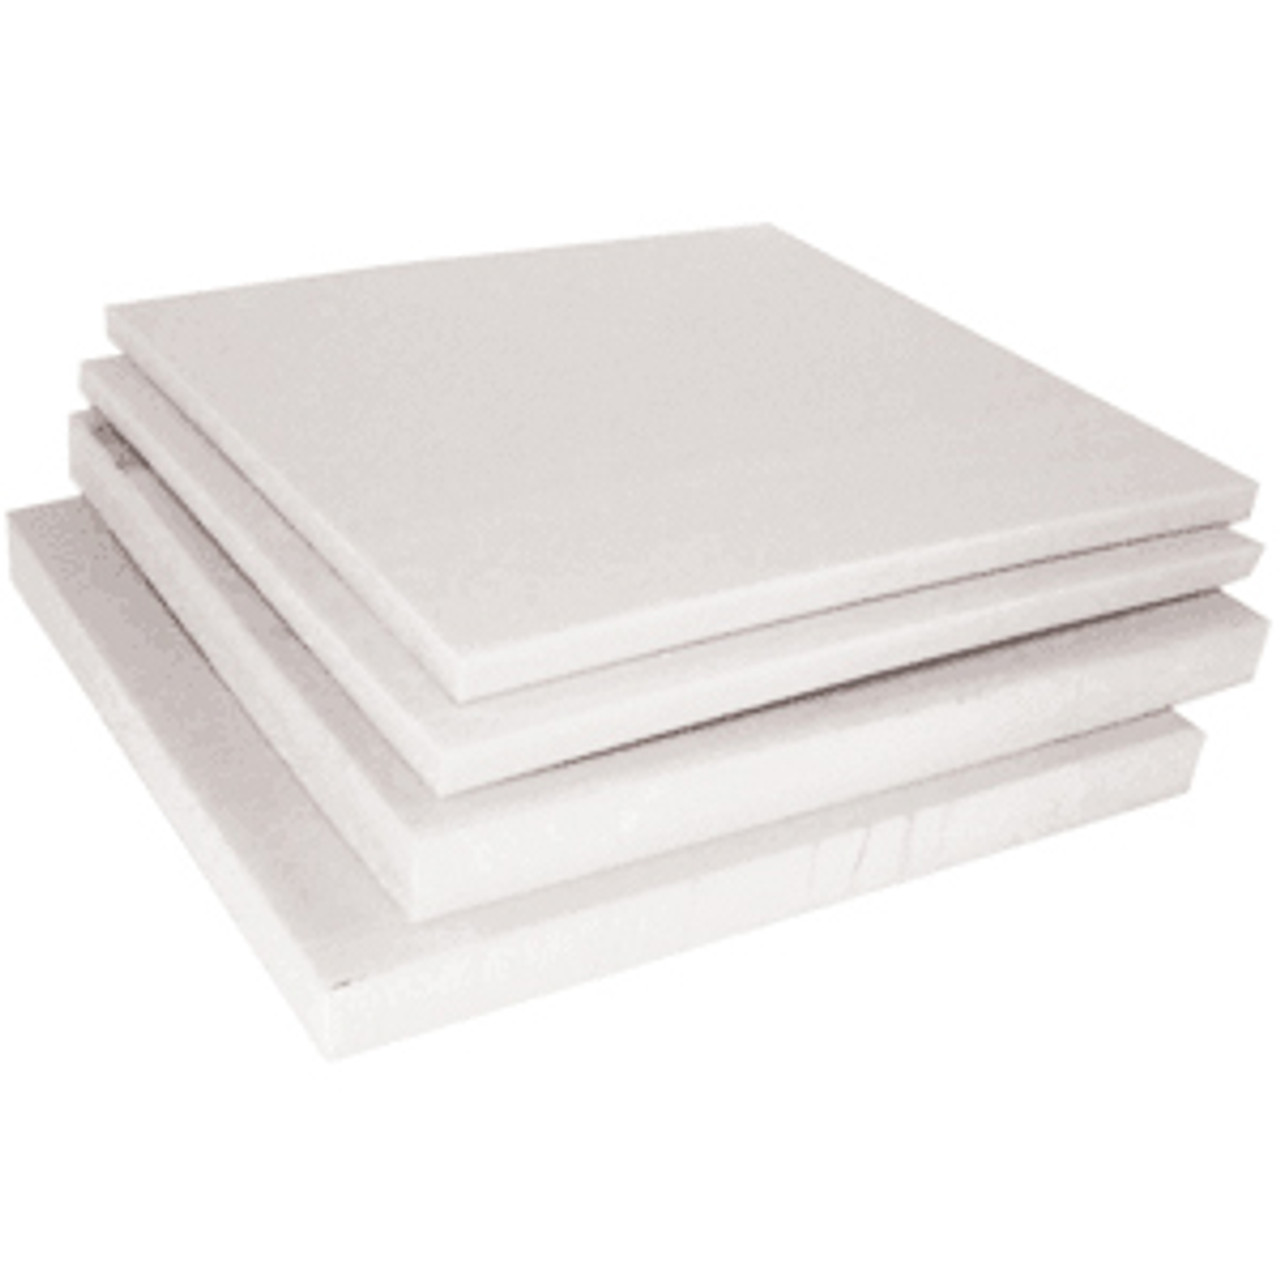 Zoro Select White Polystyrene Sheet Stock 96 L x 48 W x 0.118 Thick  3GYA2